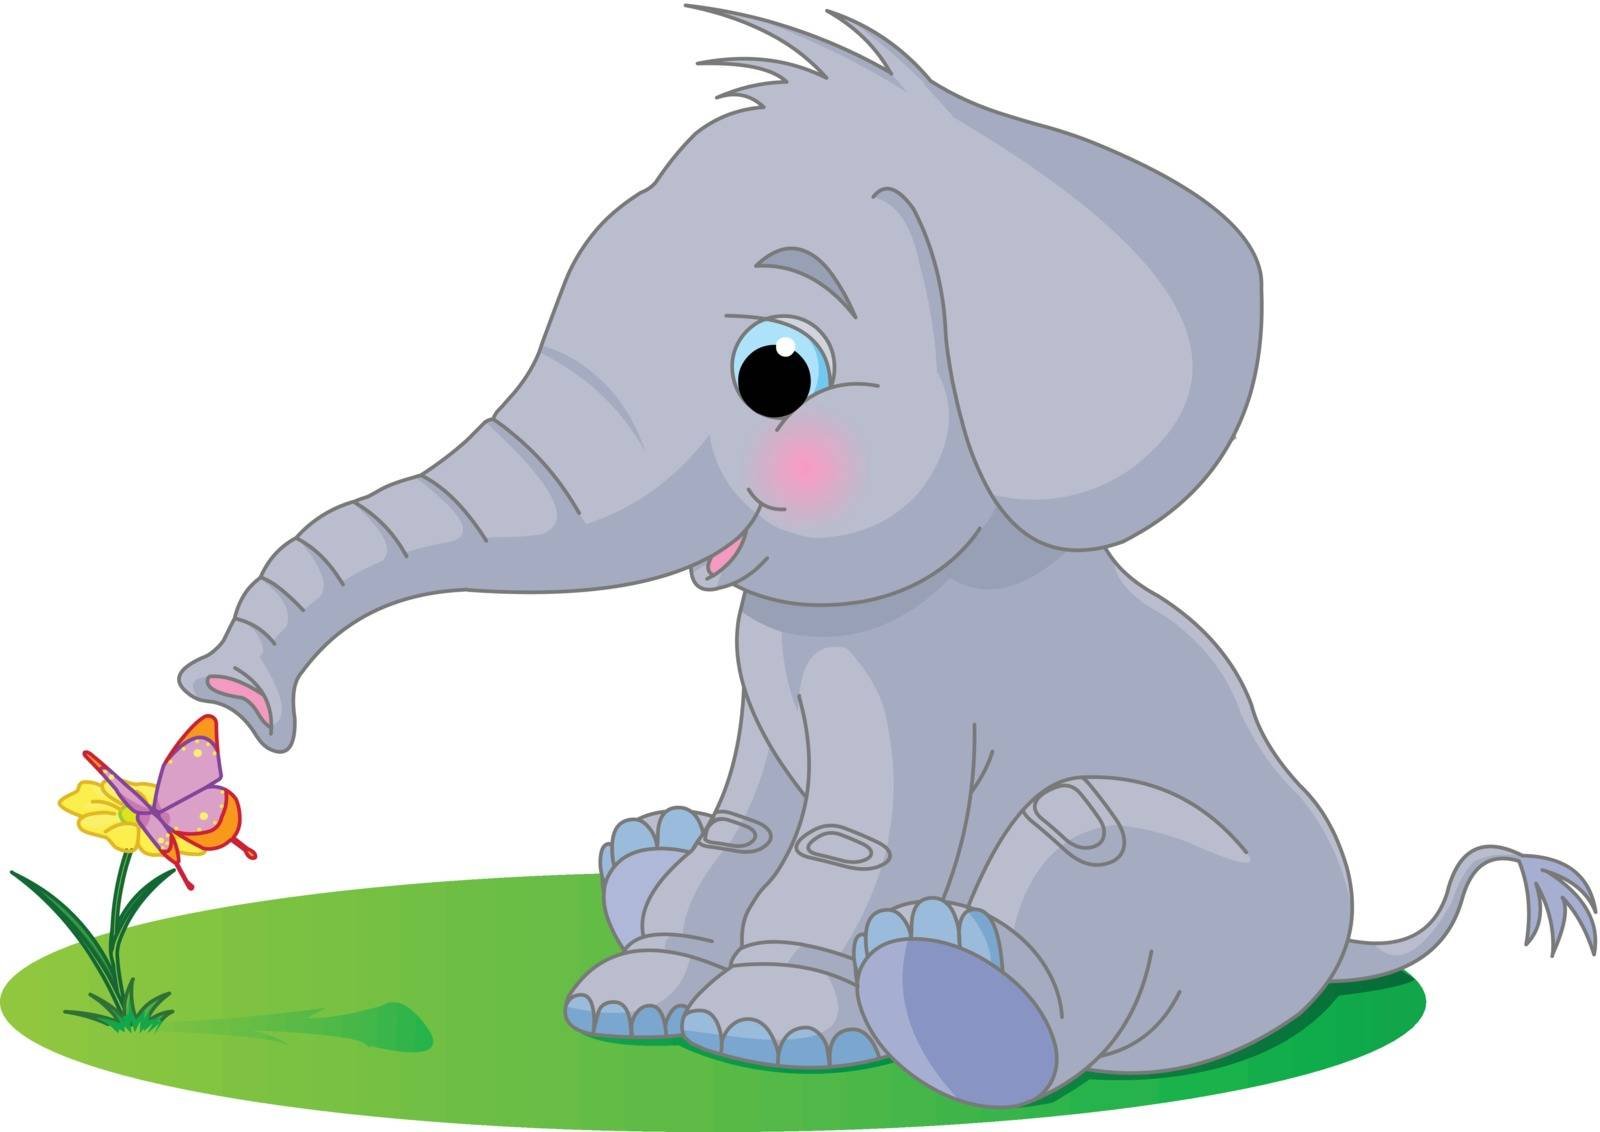 Вырасти слона